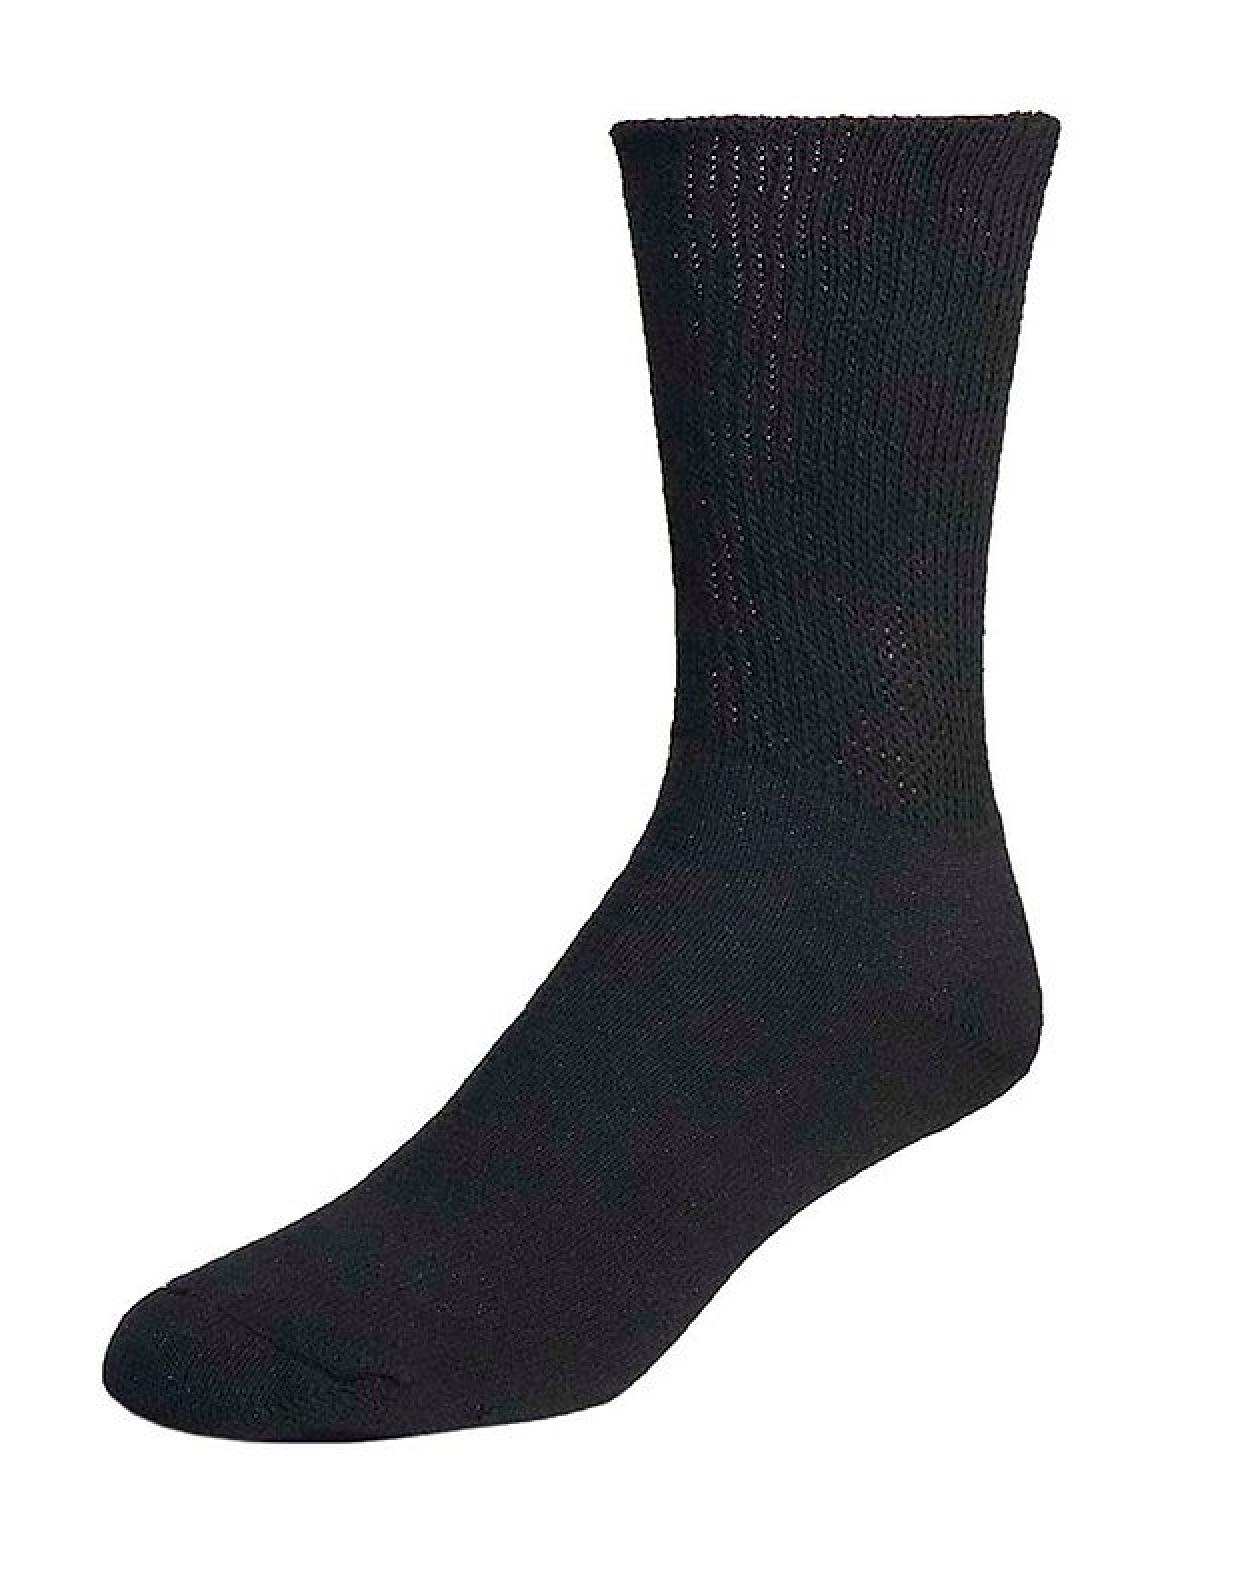 The Railroad Sock Men's Diabetic Natural Sock